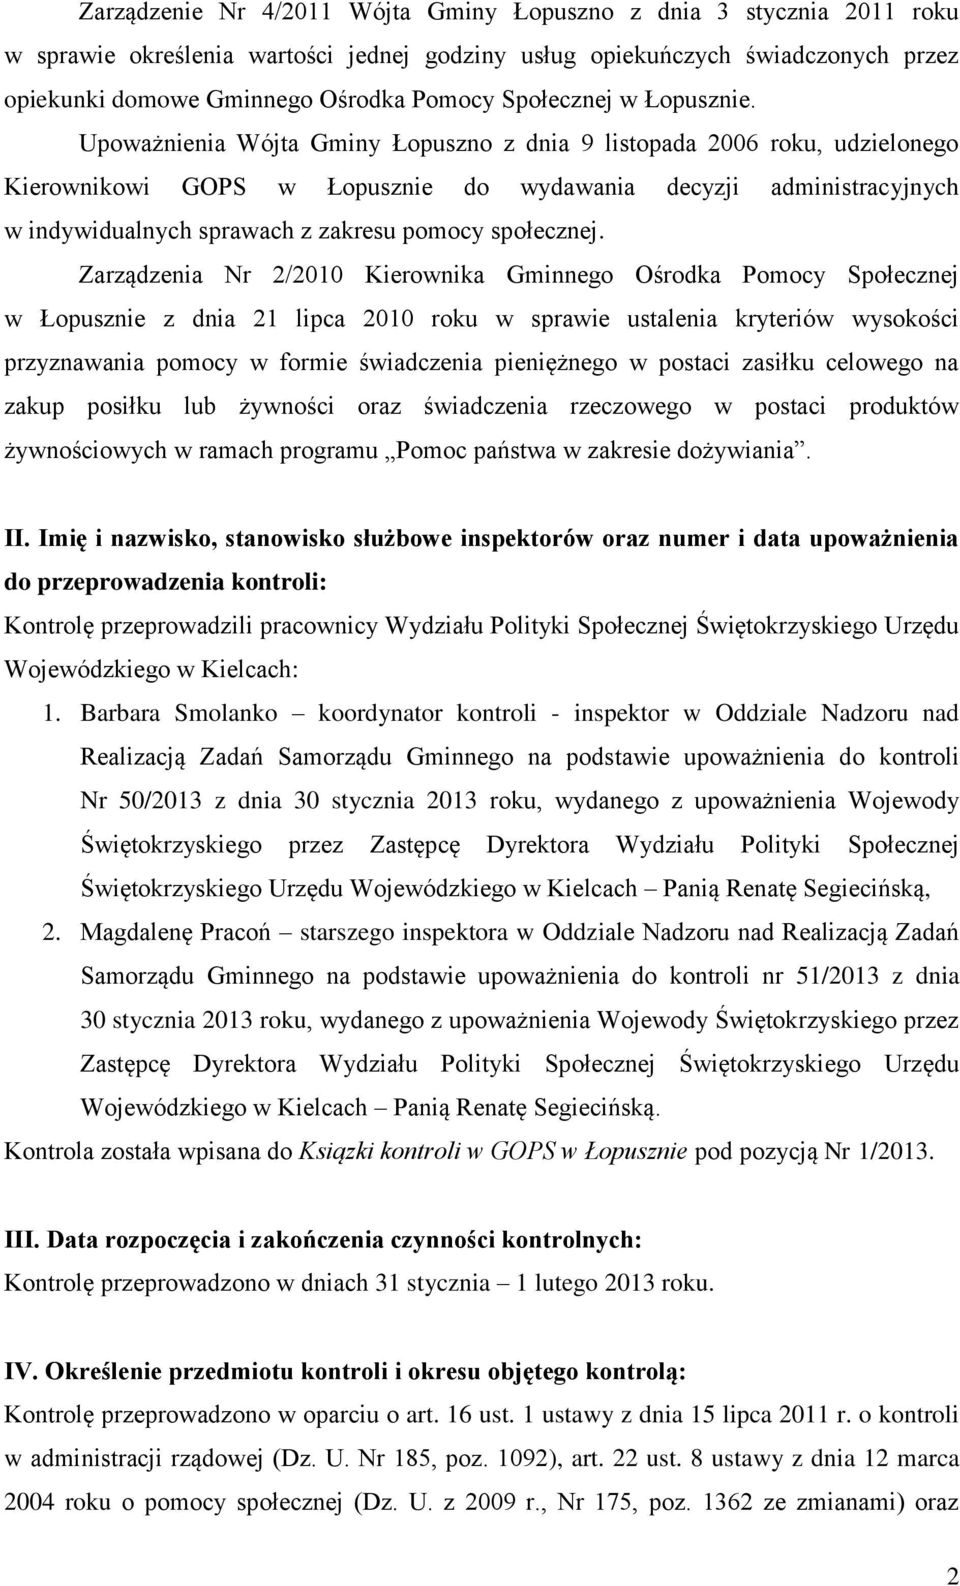 Upoważnienia Wójta Gminy Łopuszno z dnia 9 listopada 2006 roku, udzielonego Kierownikowi GOPS w Łopusznie do wydawania decyzji administracyjnych w indywidualnych sprawach z zakresu pomocy społecznej.